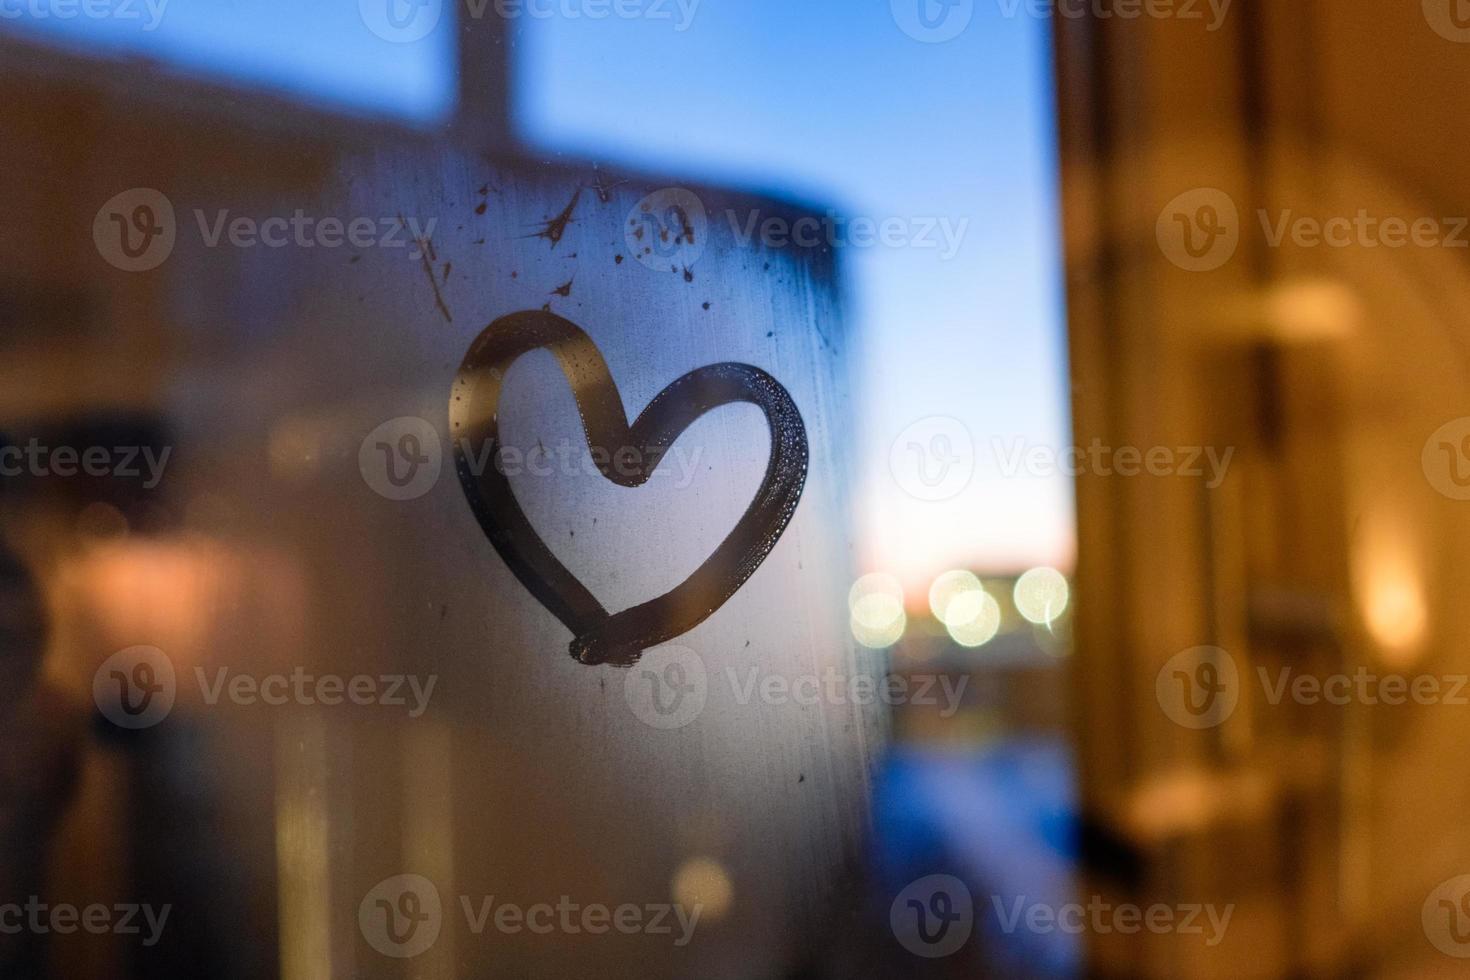 Drawing heart on window in winter photo